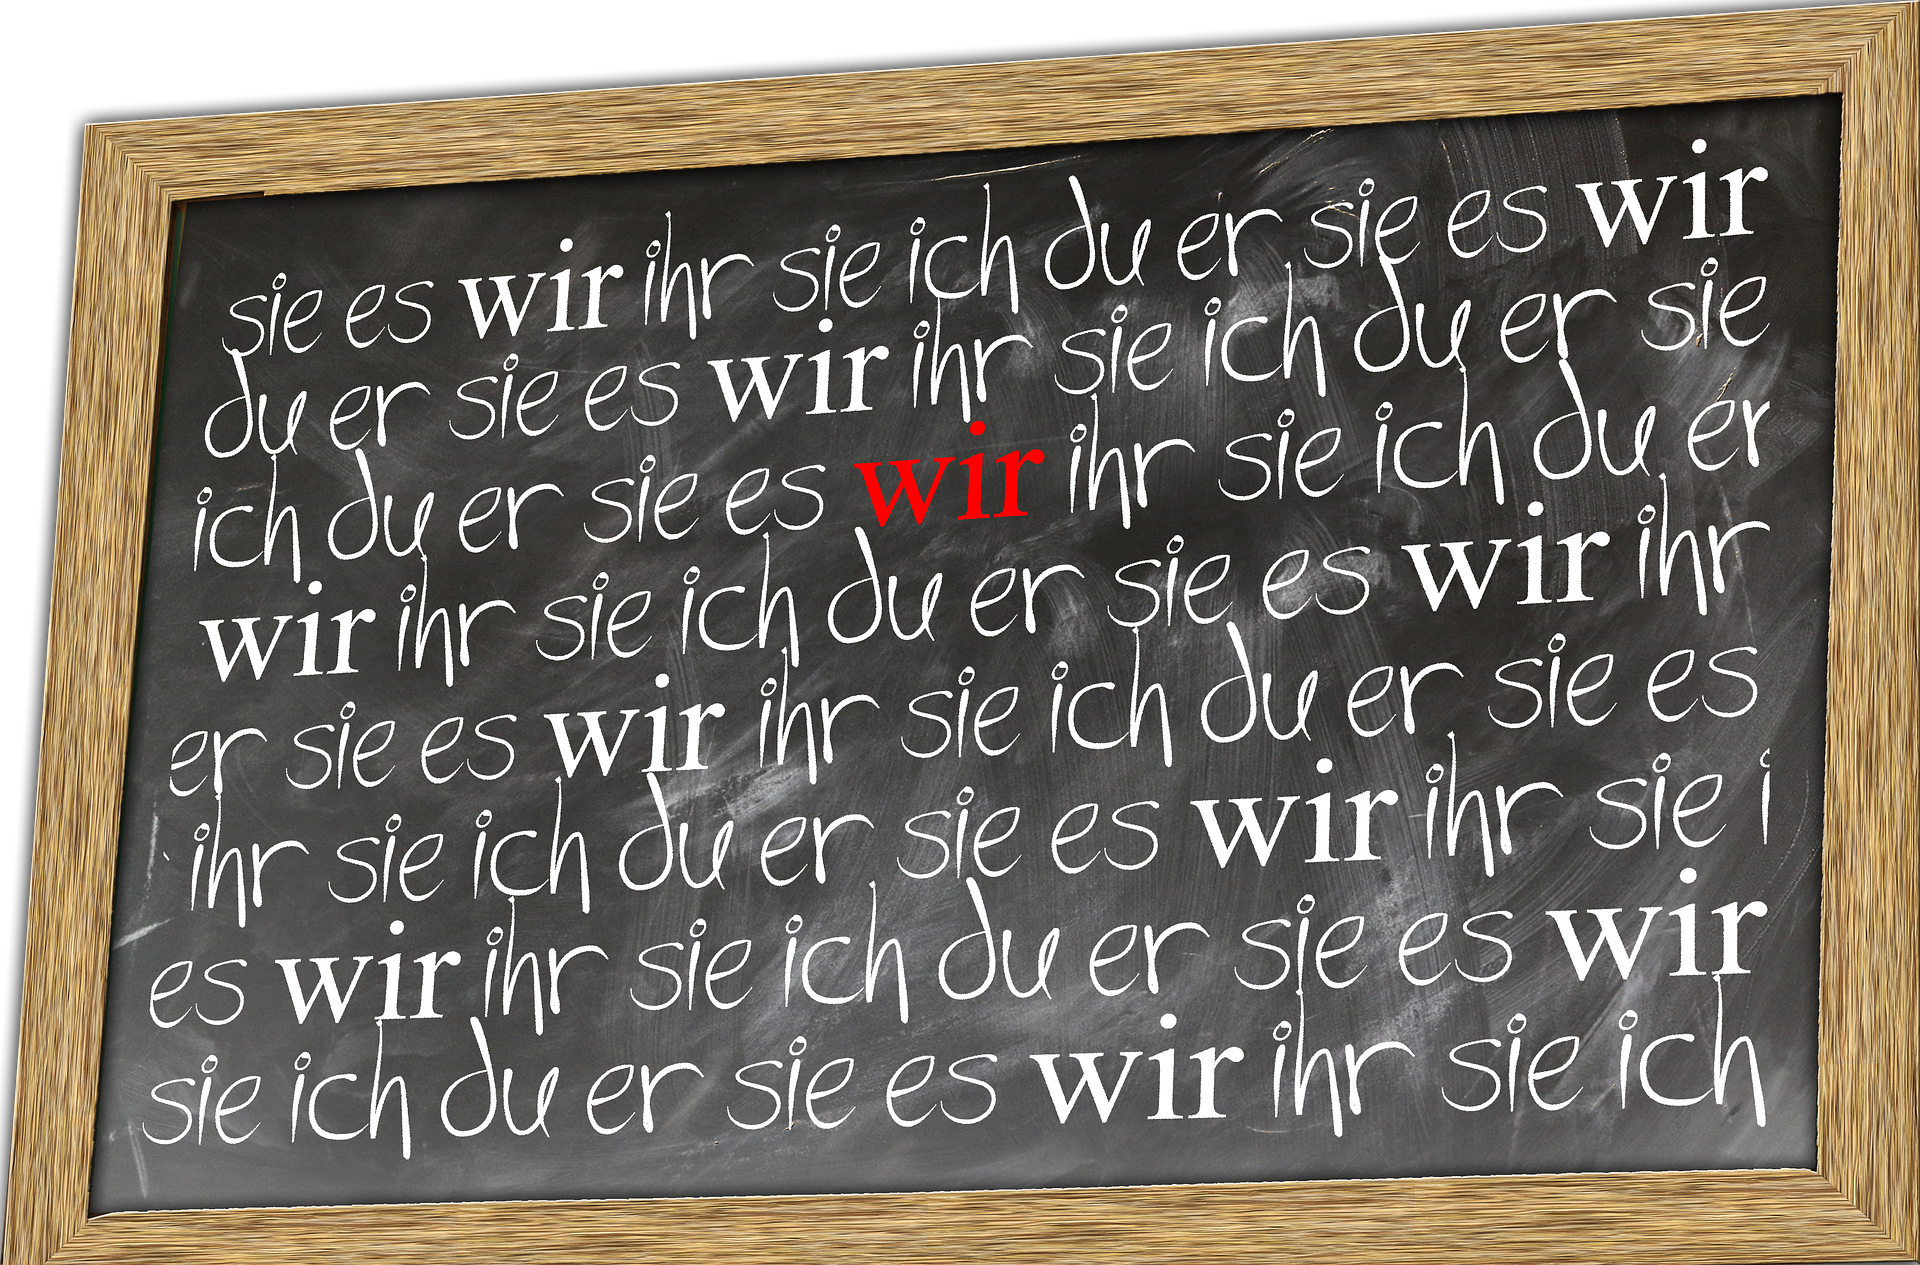 chalk board with German pronouns (ich, du, er, sie, es, wir, ihr, sie, Sie)